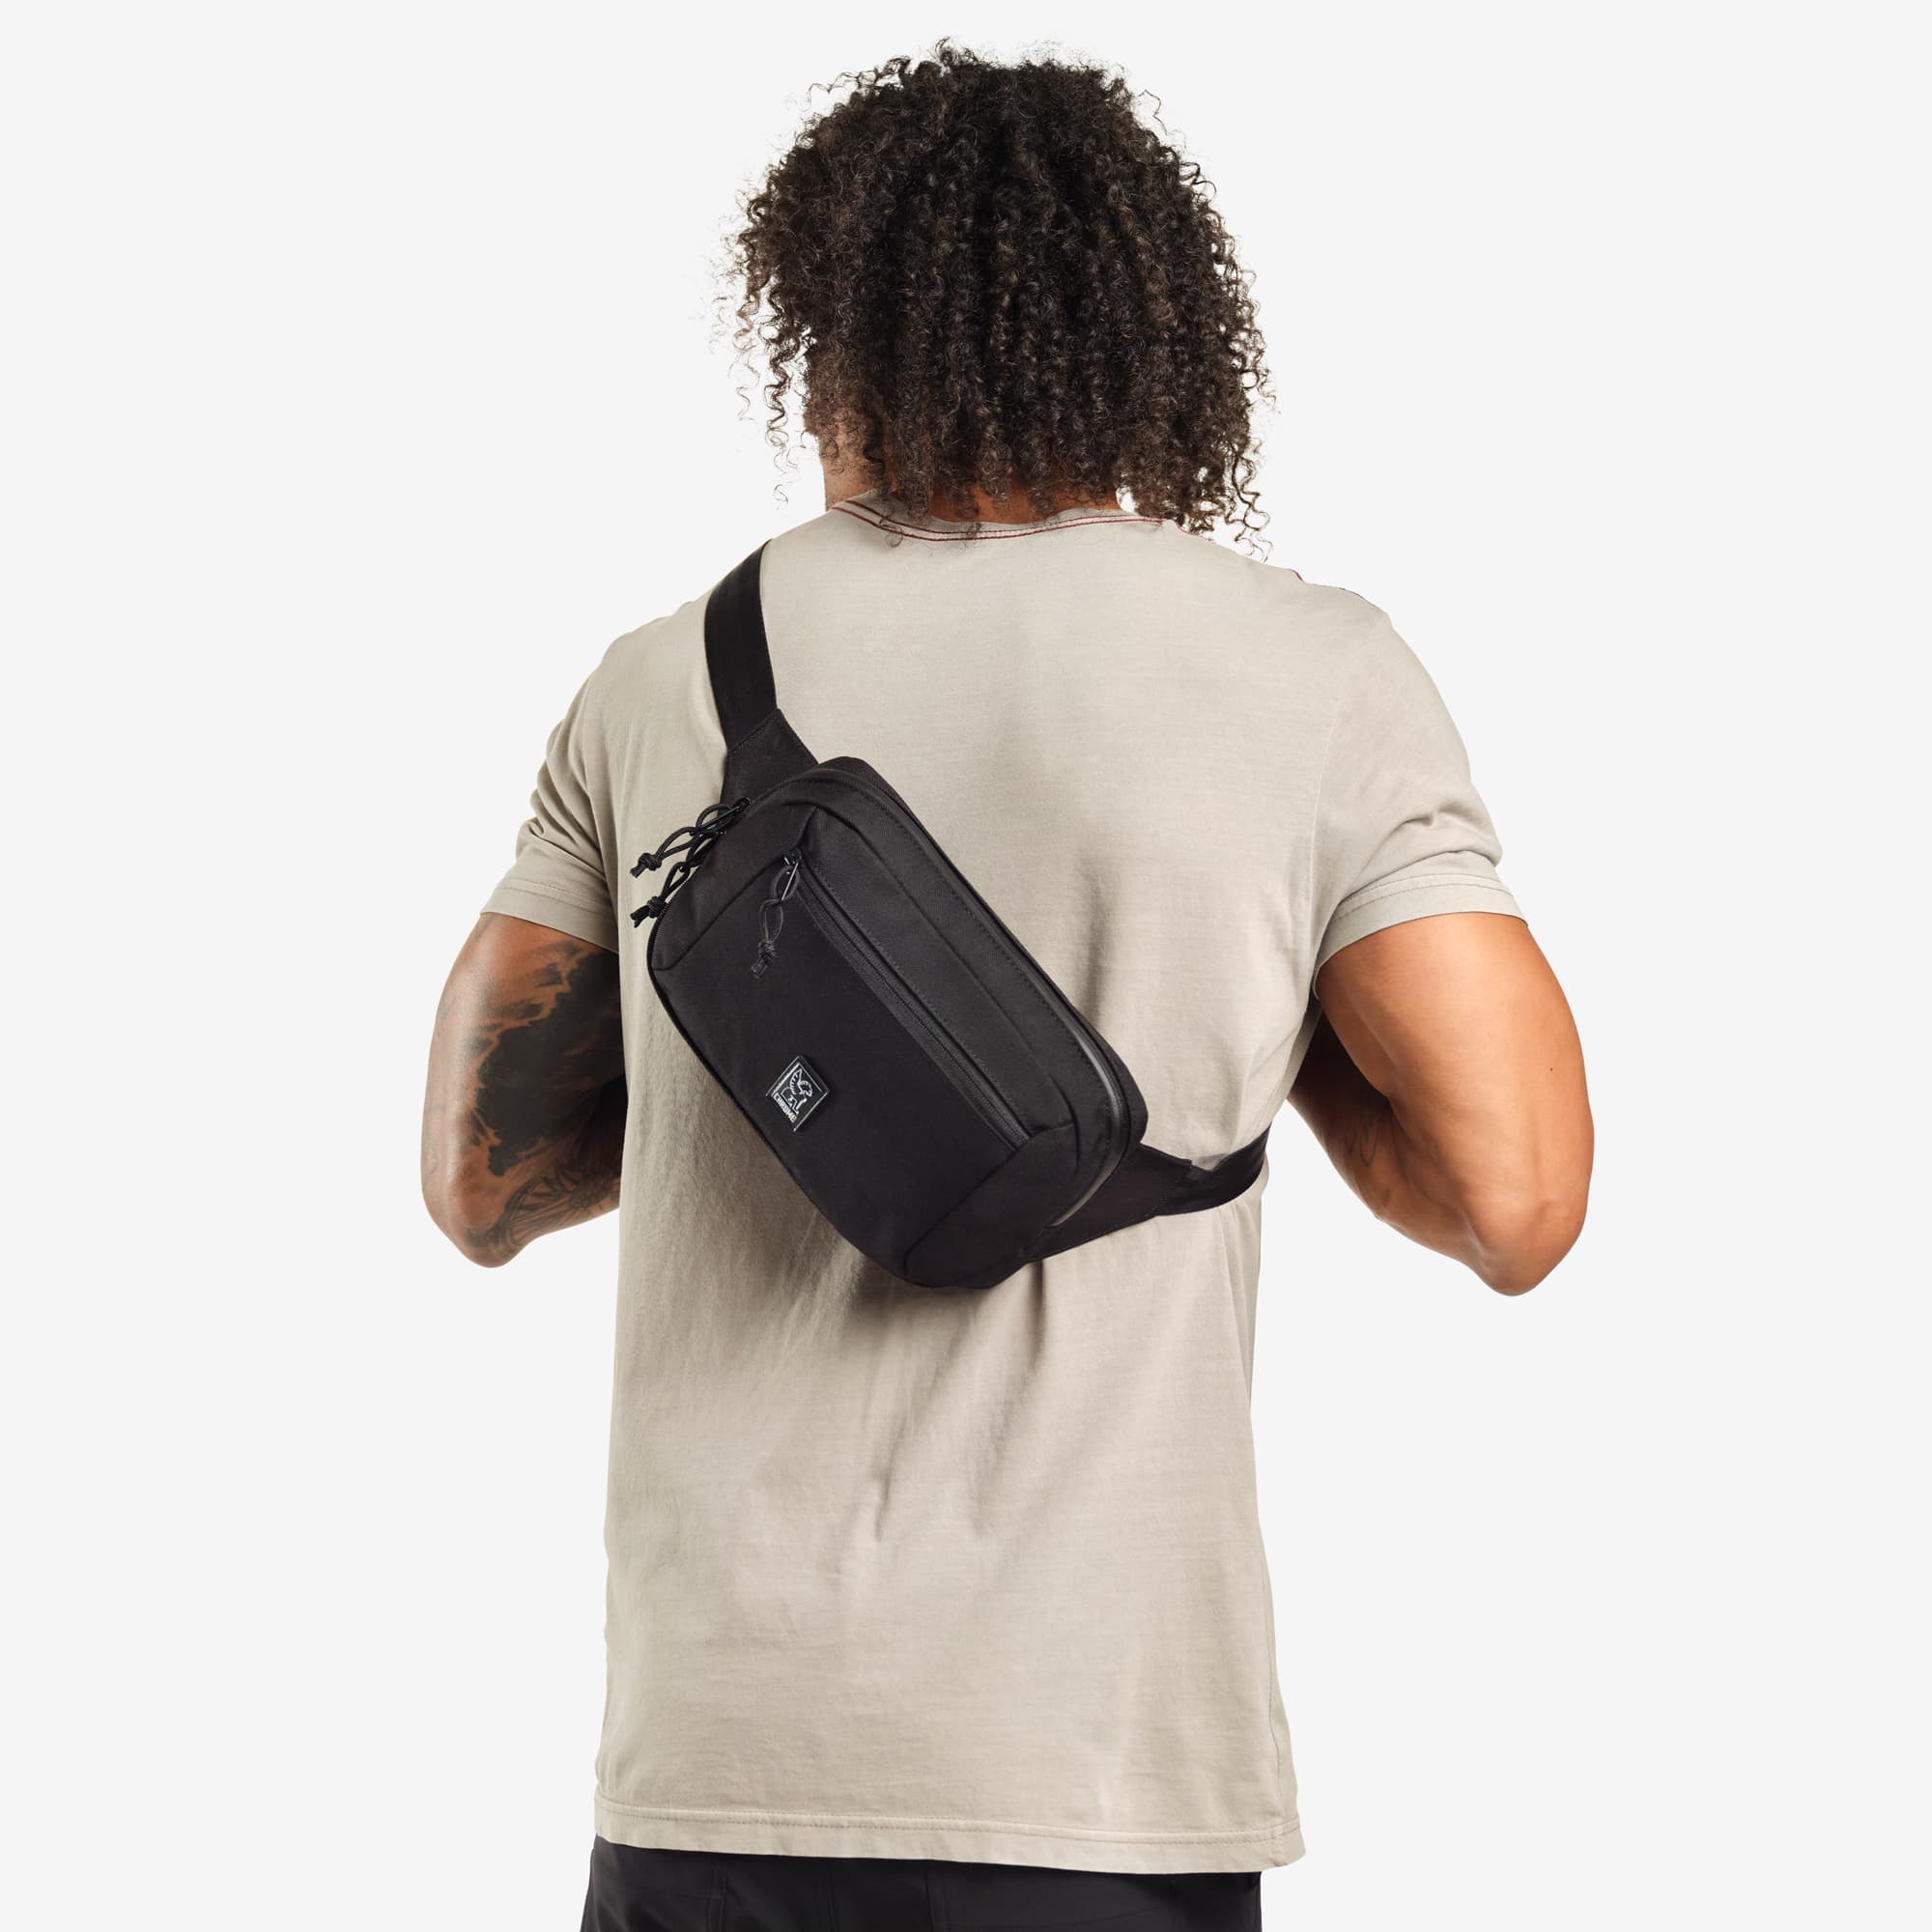 Ziptop Waistpack sling in black worn by a man